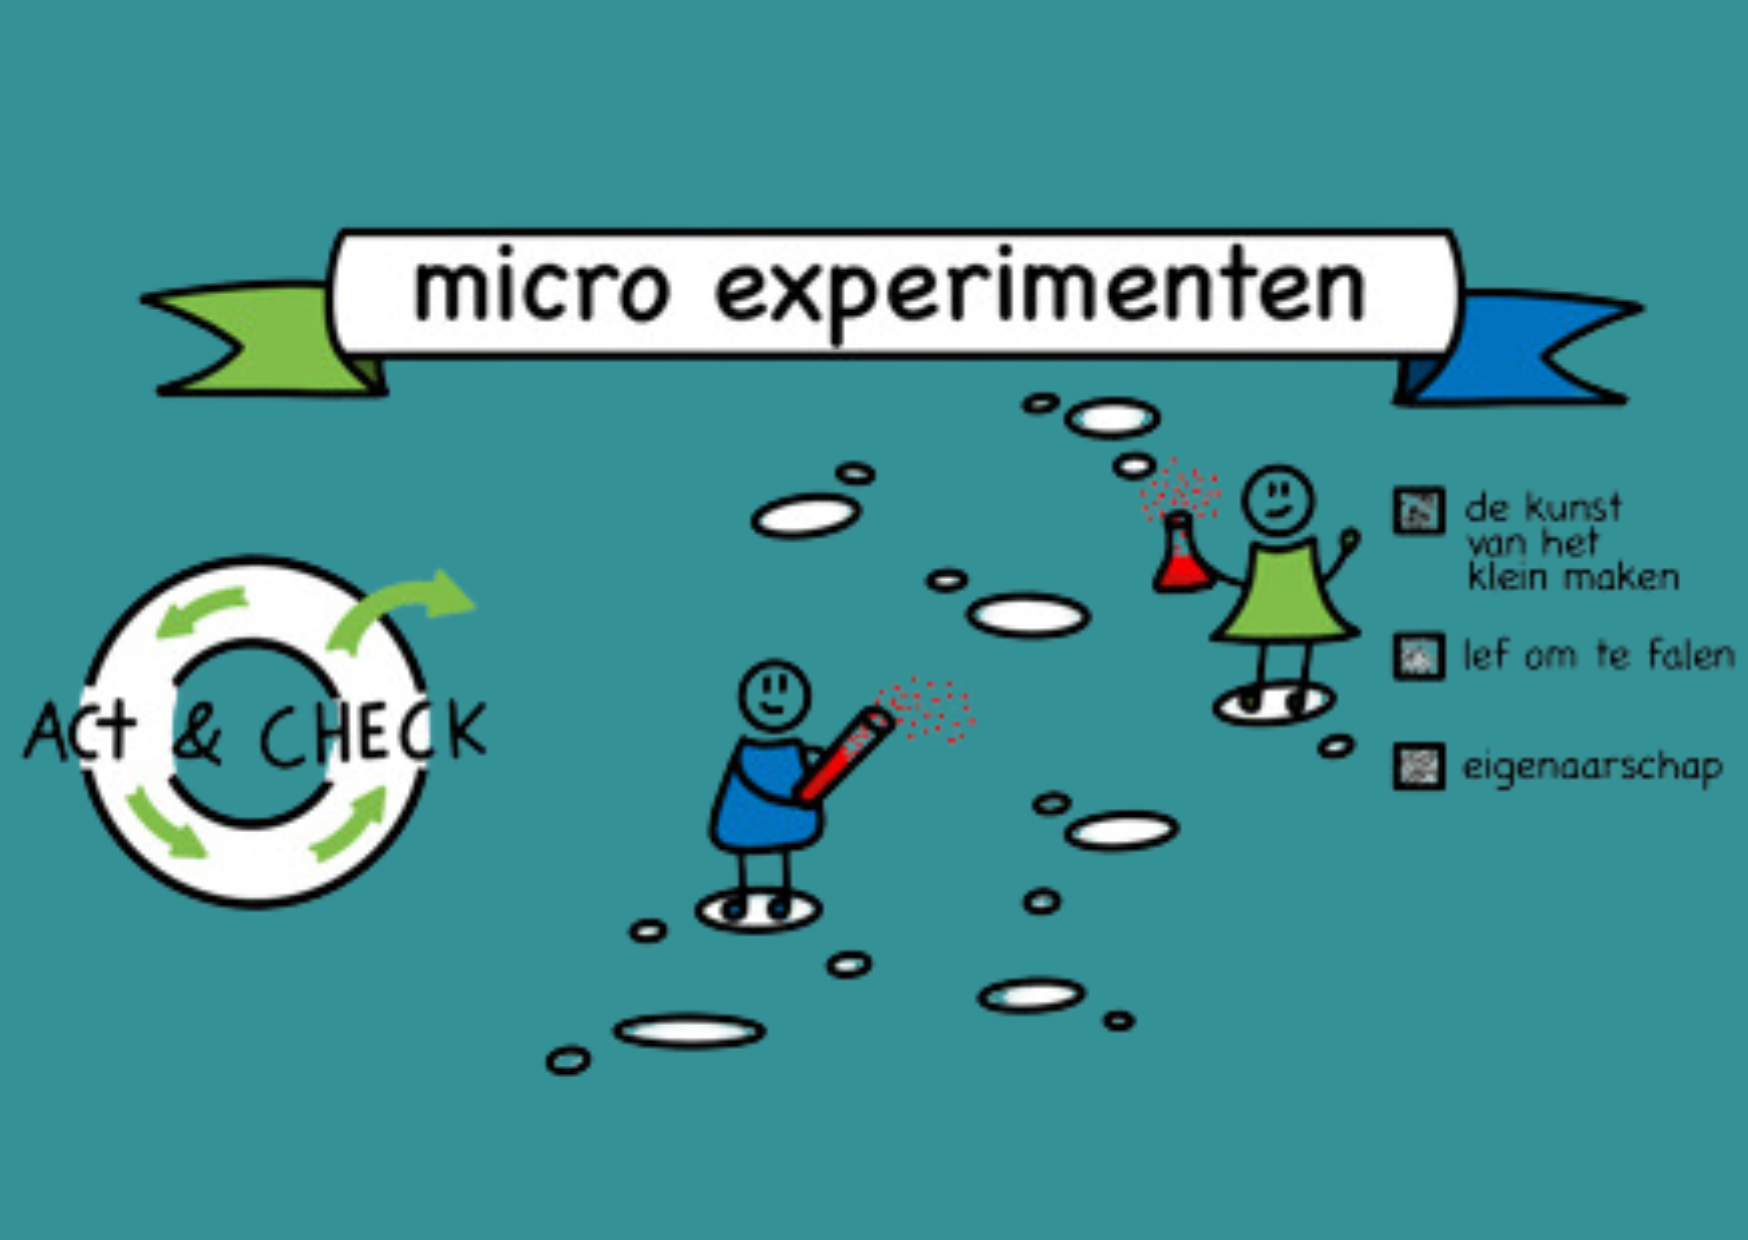 Fade 6 Micro experimenten